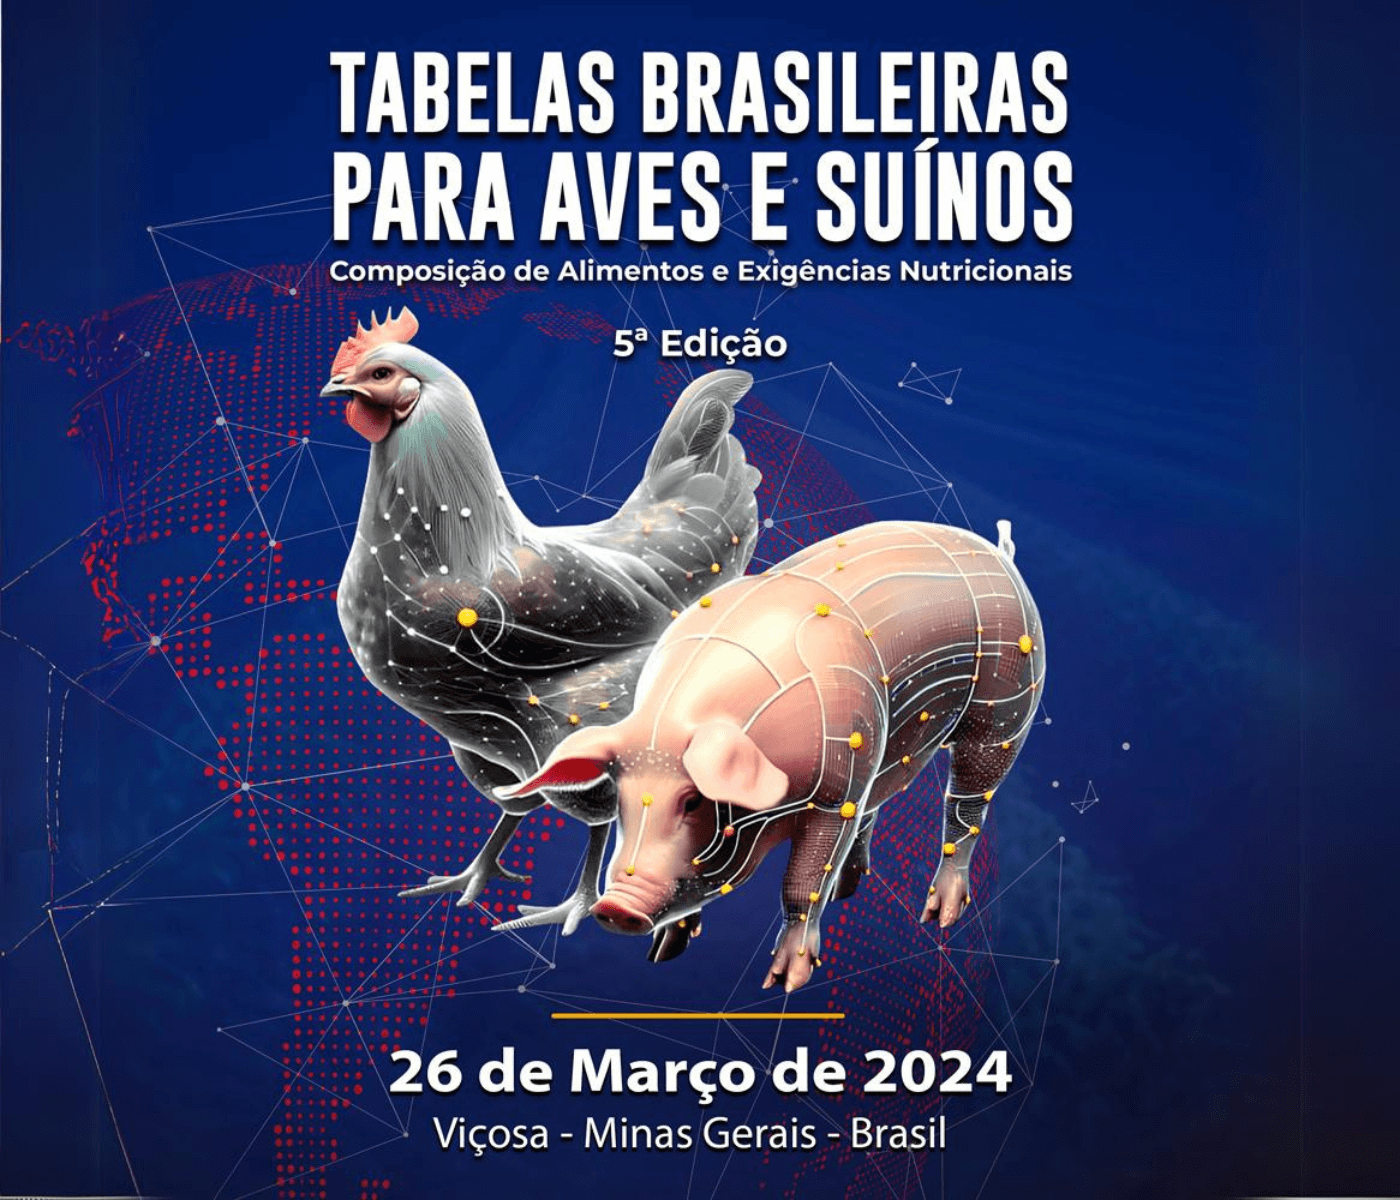 5º Simpósio Tabelas Brasileiras para Aves e Suínos acontecerá no dia 26 de março